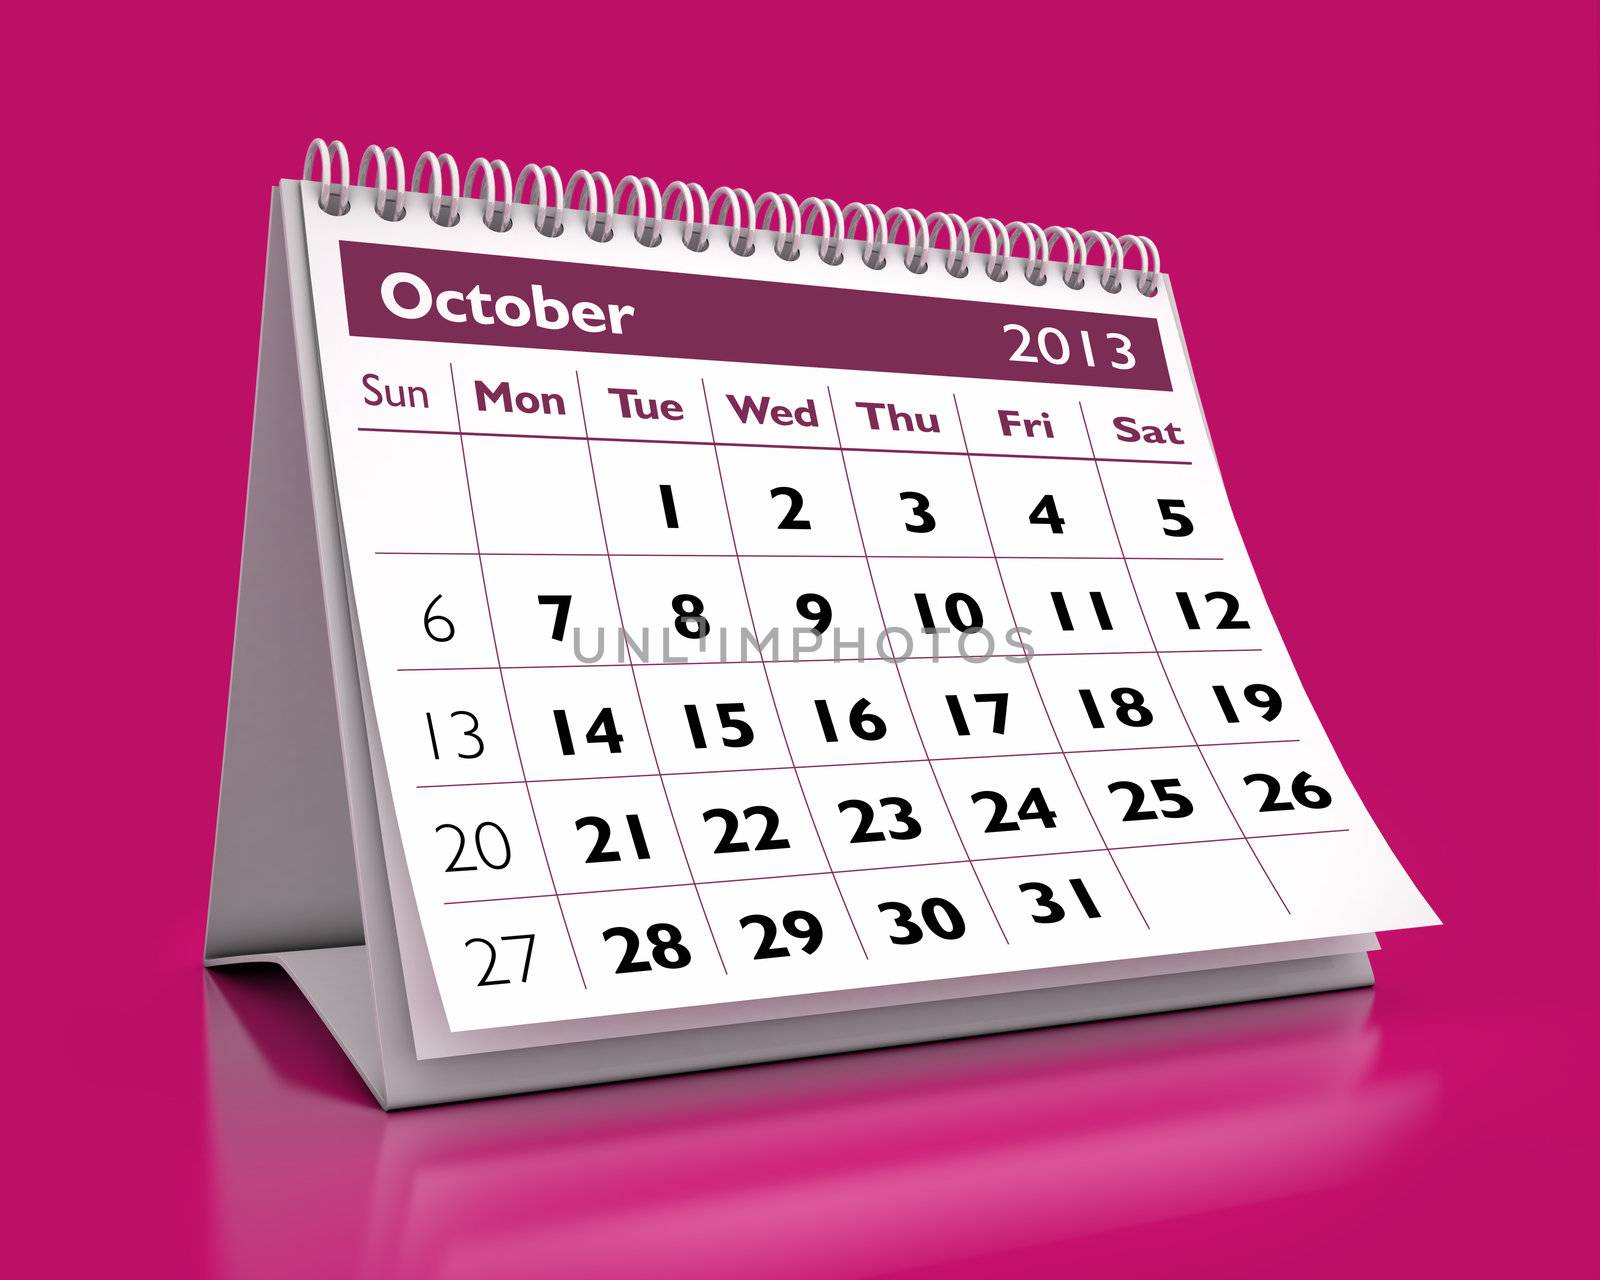 3D desktop calendar October 2013 in color background